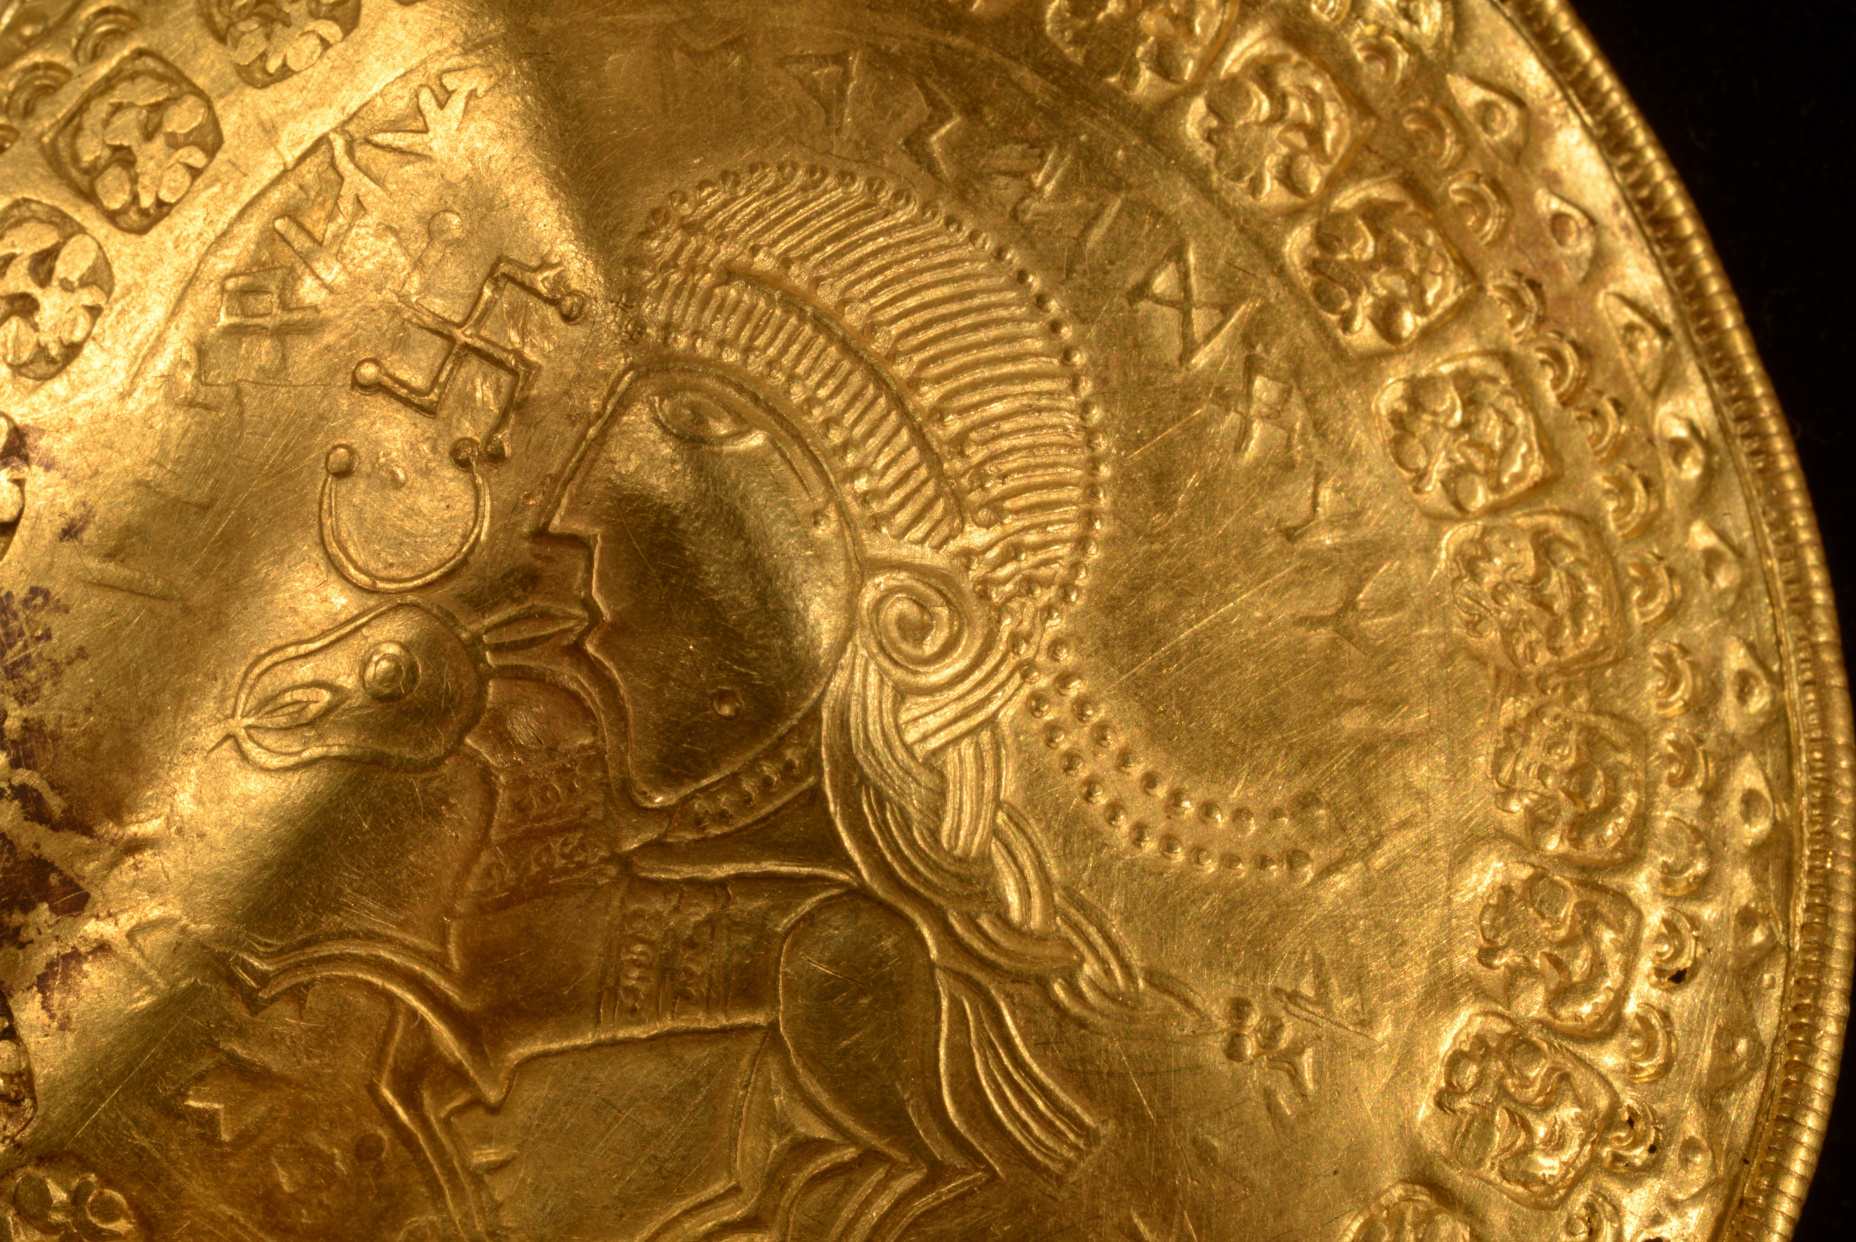 L'inscription "Il est l'homme d'Odin" est visible dans un demi-cercle rond au-dessus de la tête d'une figure sur une bractéate dorée déterrée à Vindelev, au Danemark, fin 2020. Les scientifiques ont identifié la plus ancienne référence connue au dieu nordique Odin sur un or disque déterré dans l'ouest du Danemark.